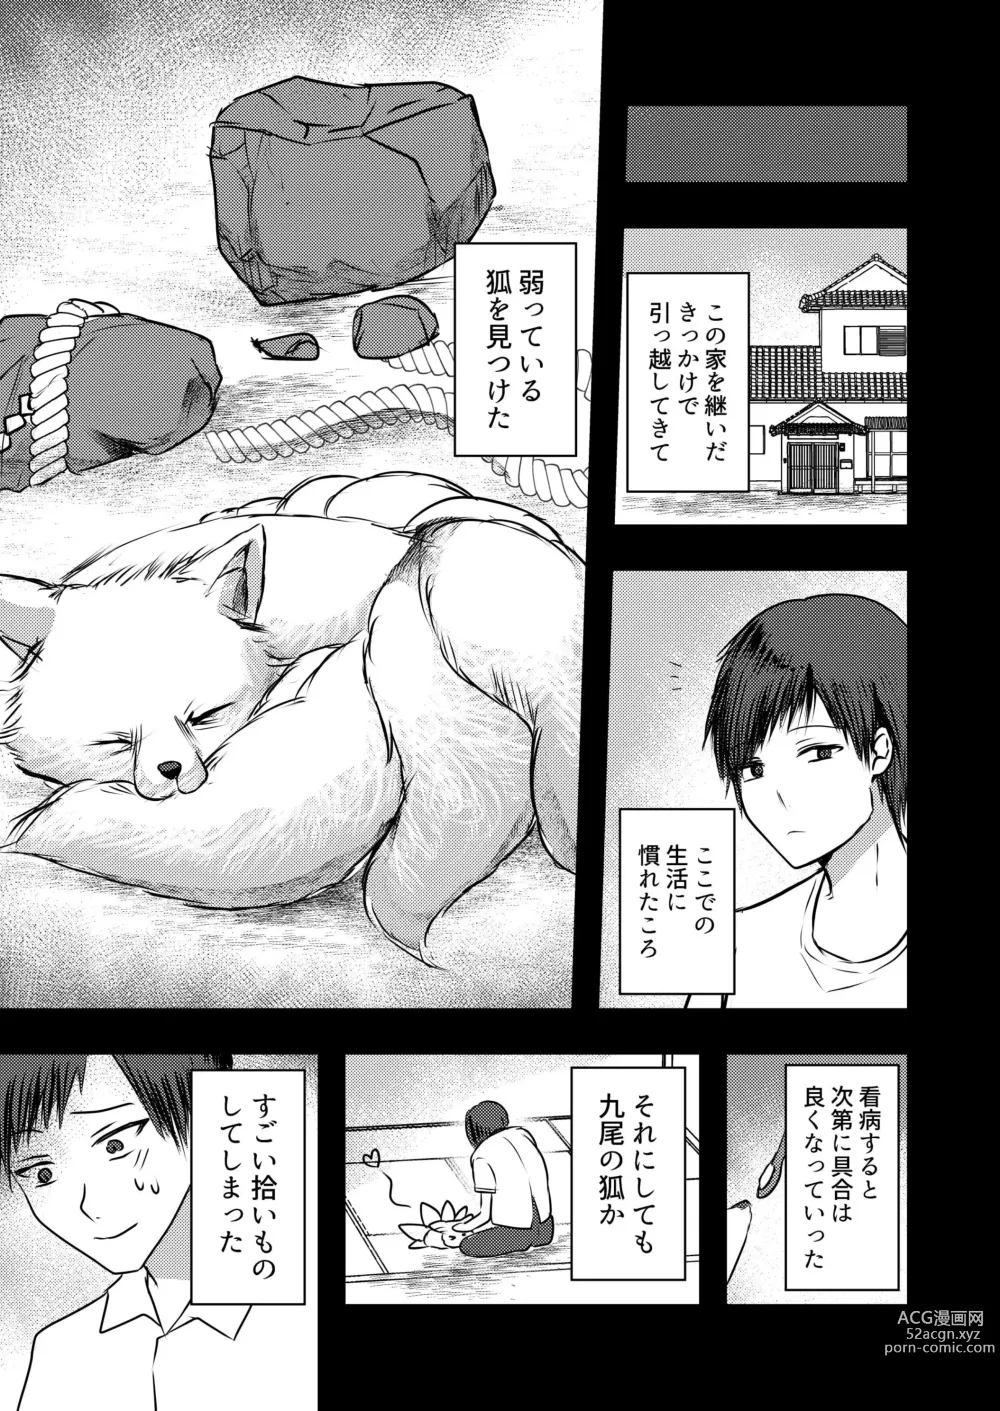 Page 4 of doujinshi Yandere Youkai ~Shittobukai Kyuubi no Kitsune-san Hen~